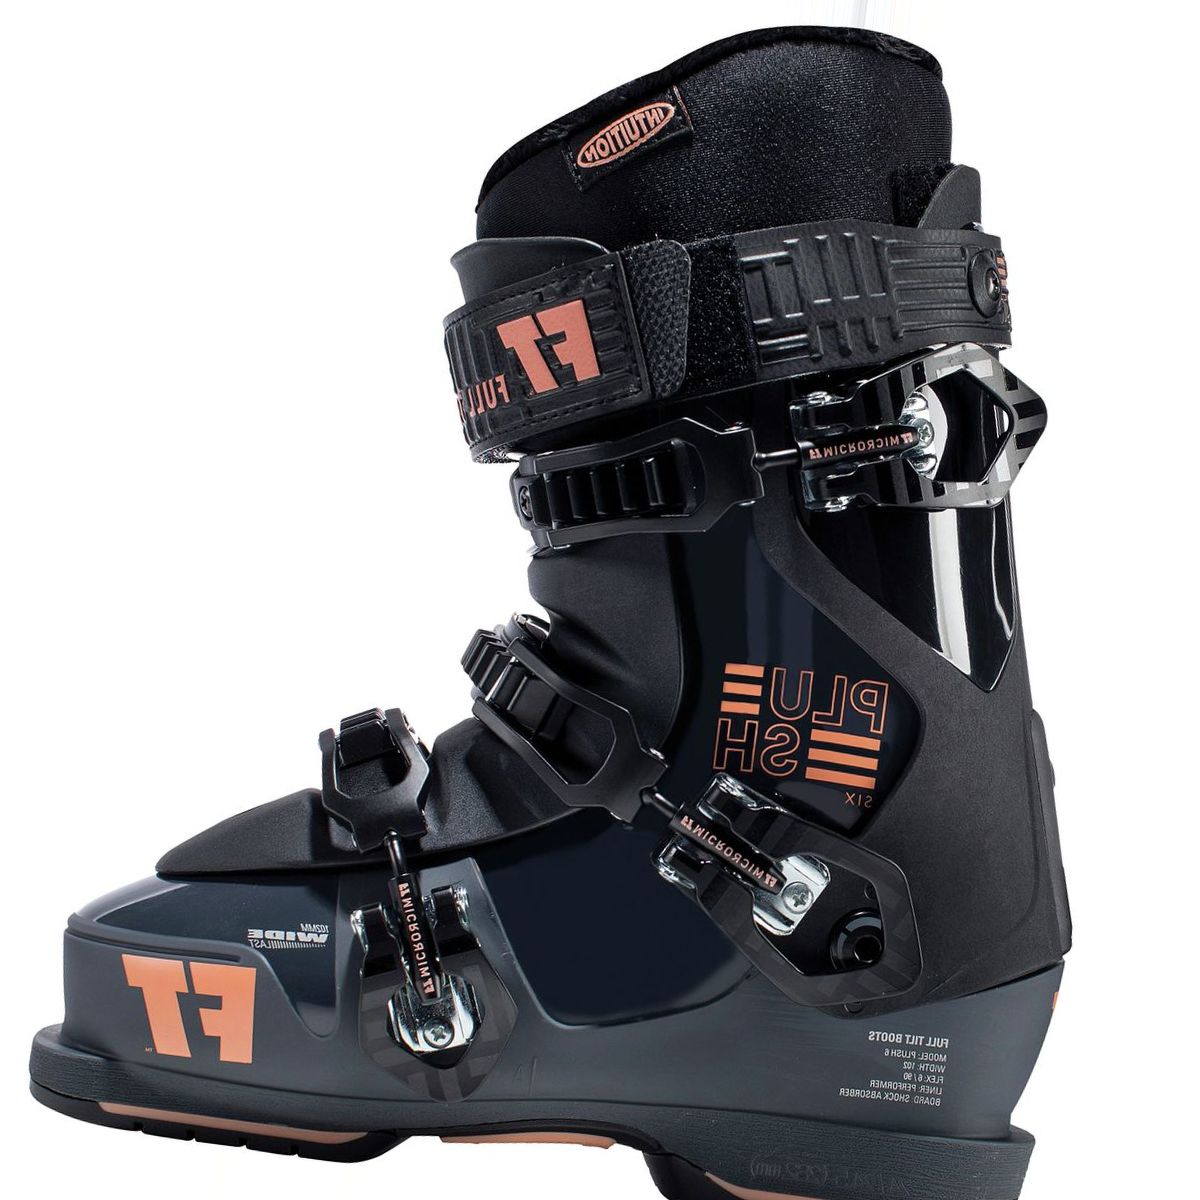 Full Tilt Plush 6 Ski Boot - Women's